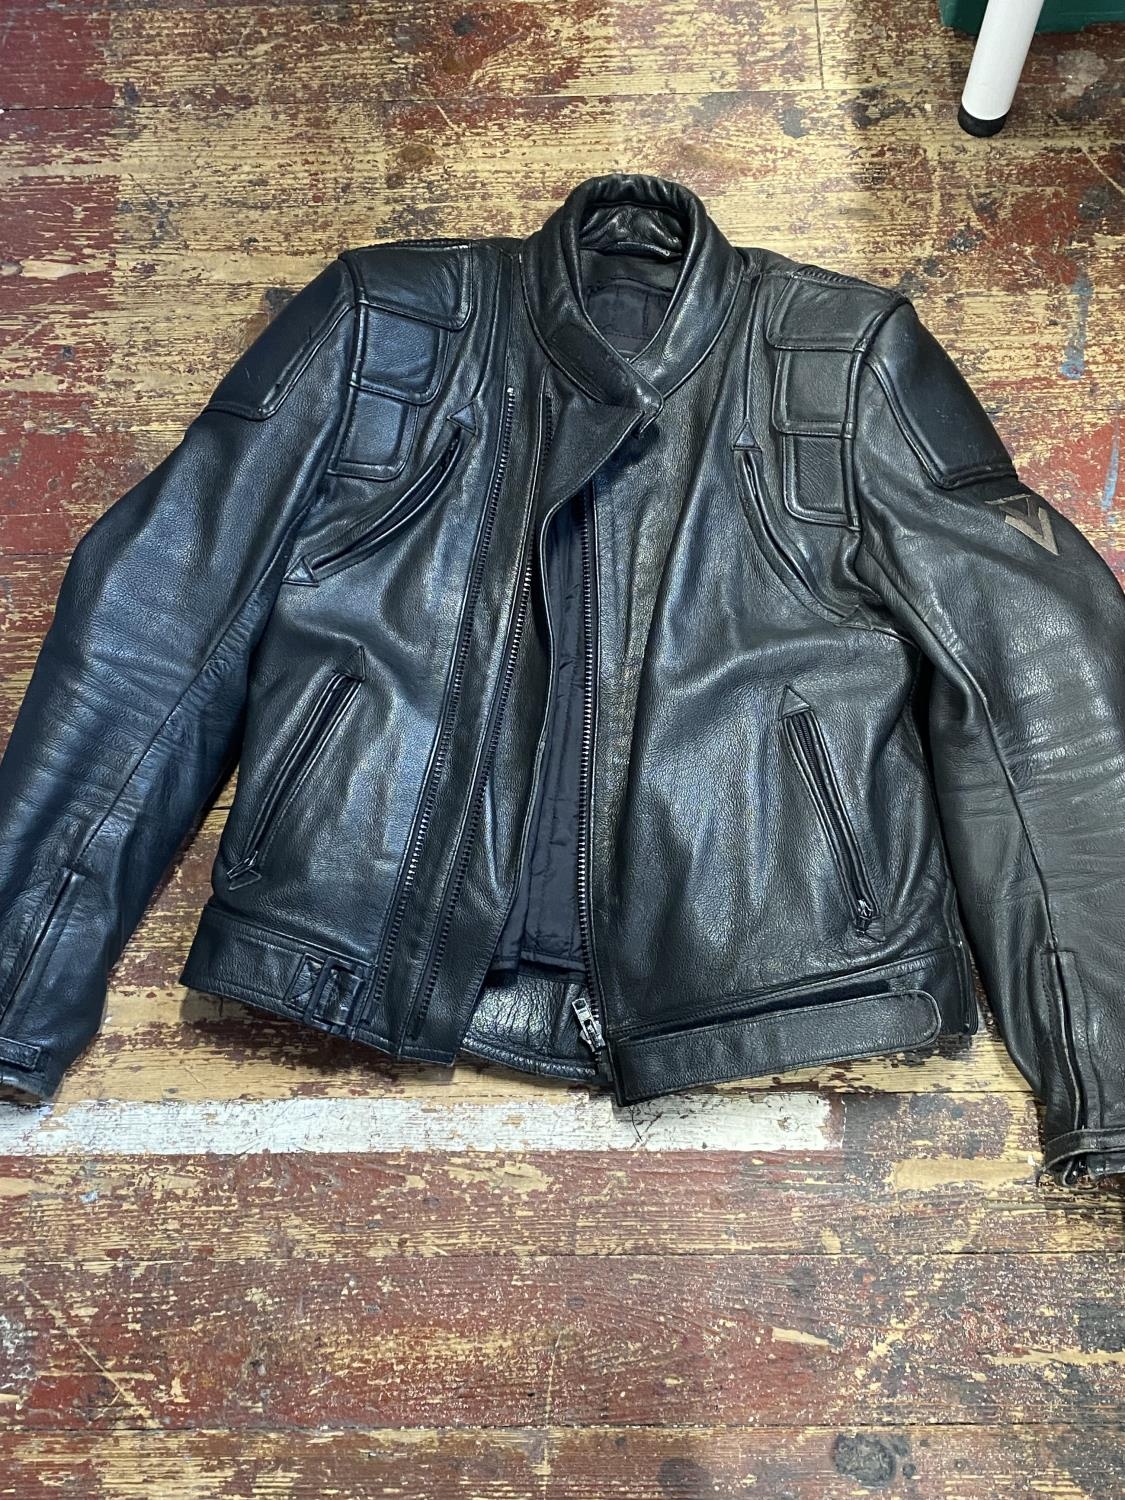 A Frank Thomas leather motorbike jacket size 42